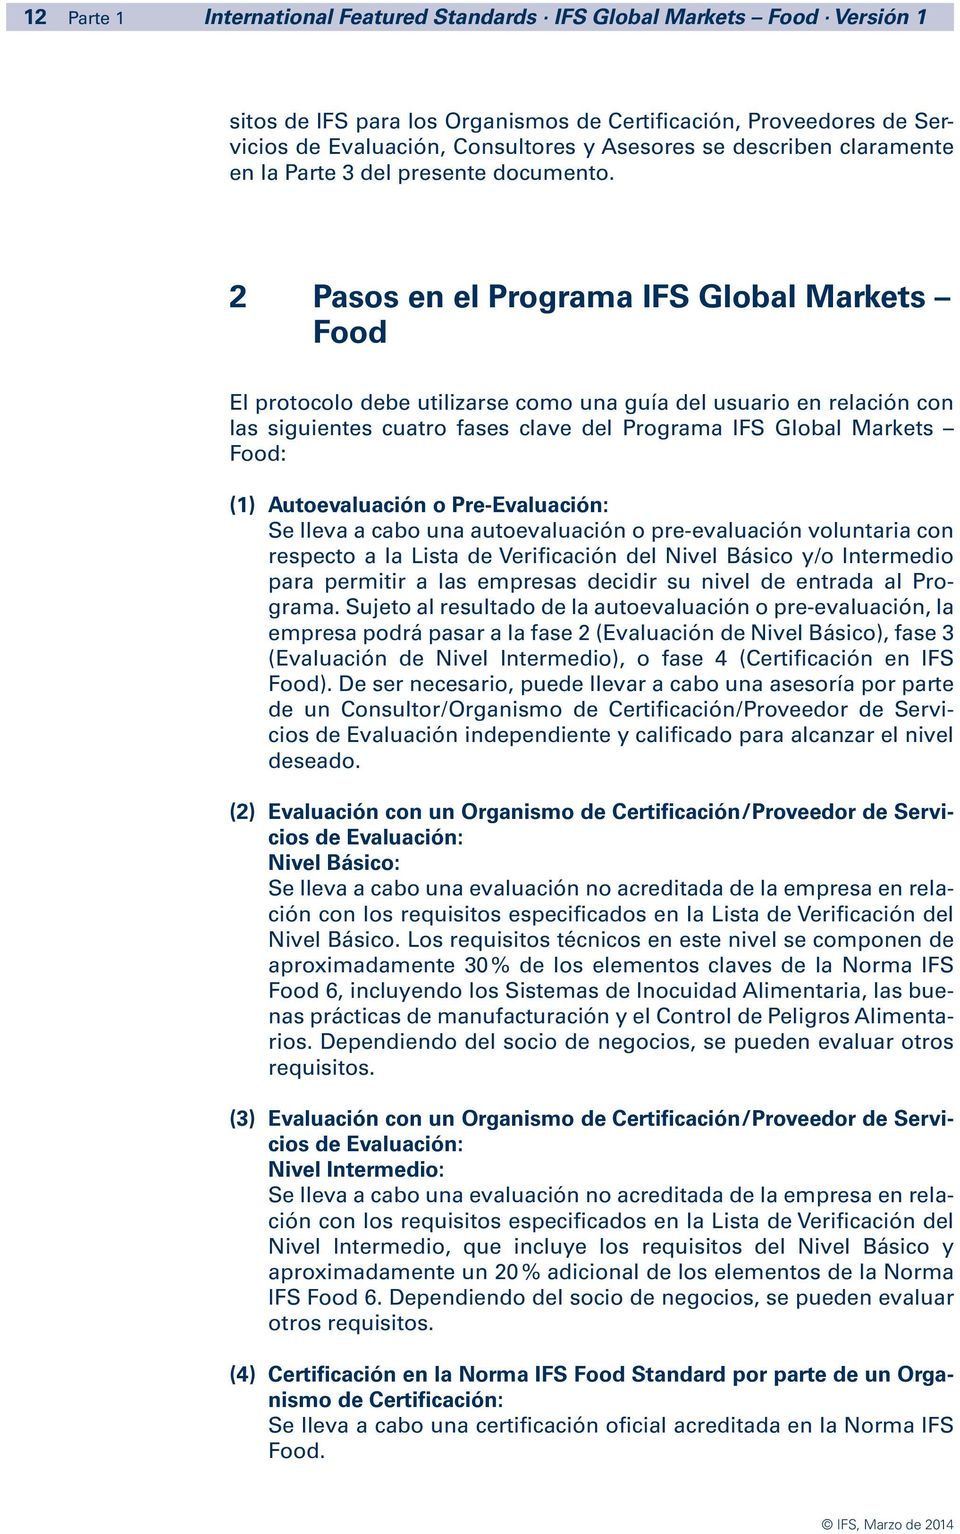 2 Pasos en el Programa IFS Global Markets Food El protocolo debe utilizarse como una guía del usuario en relación con las siguientes cuatro fases clave del Programa IFS Global Markets Food: (1)